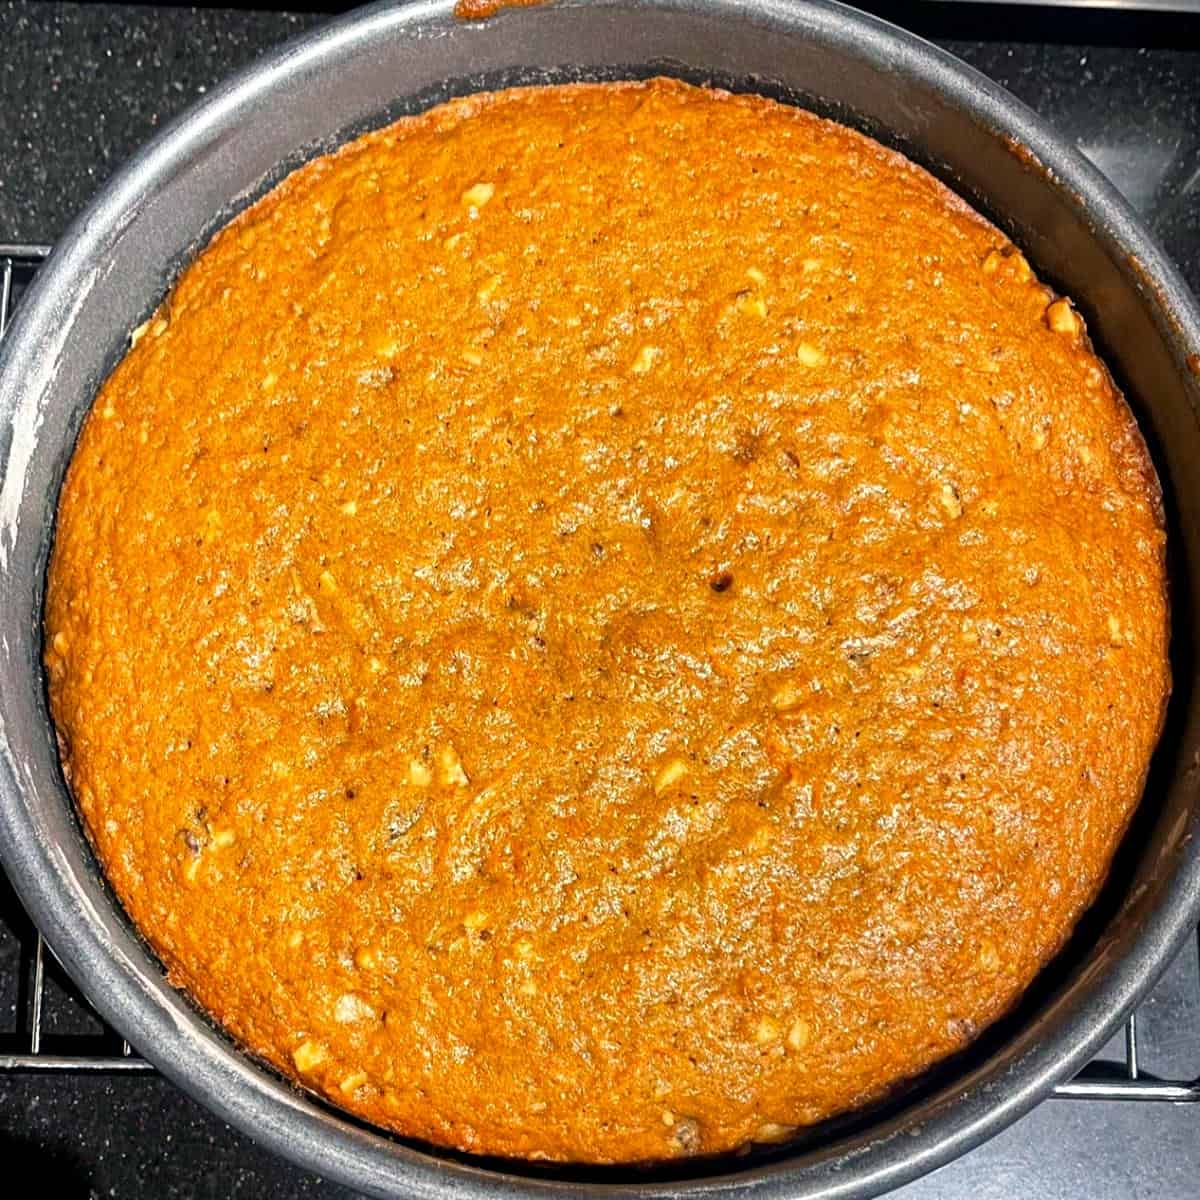 Baked vegan carrot cake in cake pan.